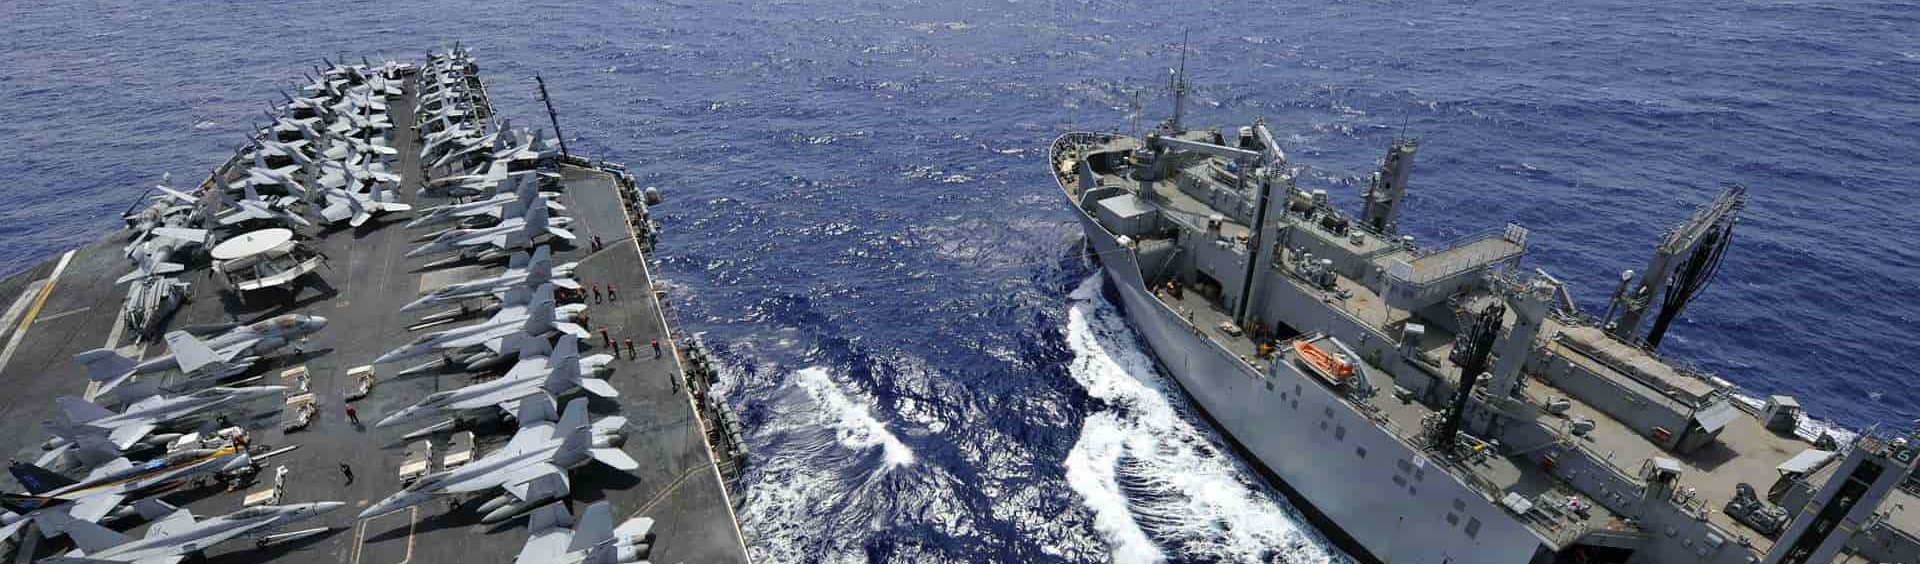 Washington “marca território” ao enviar porta-aviões dos EUA ao disputado Mar da China Meridional